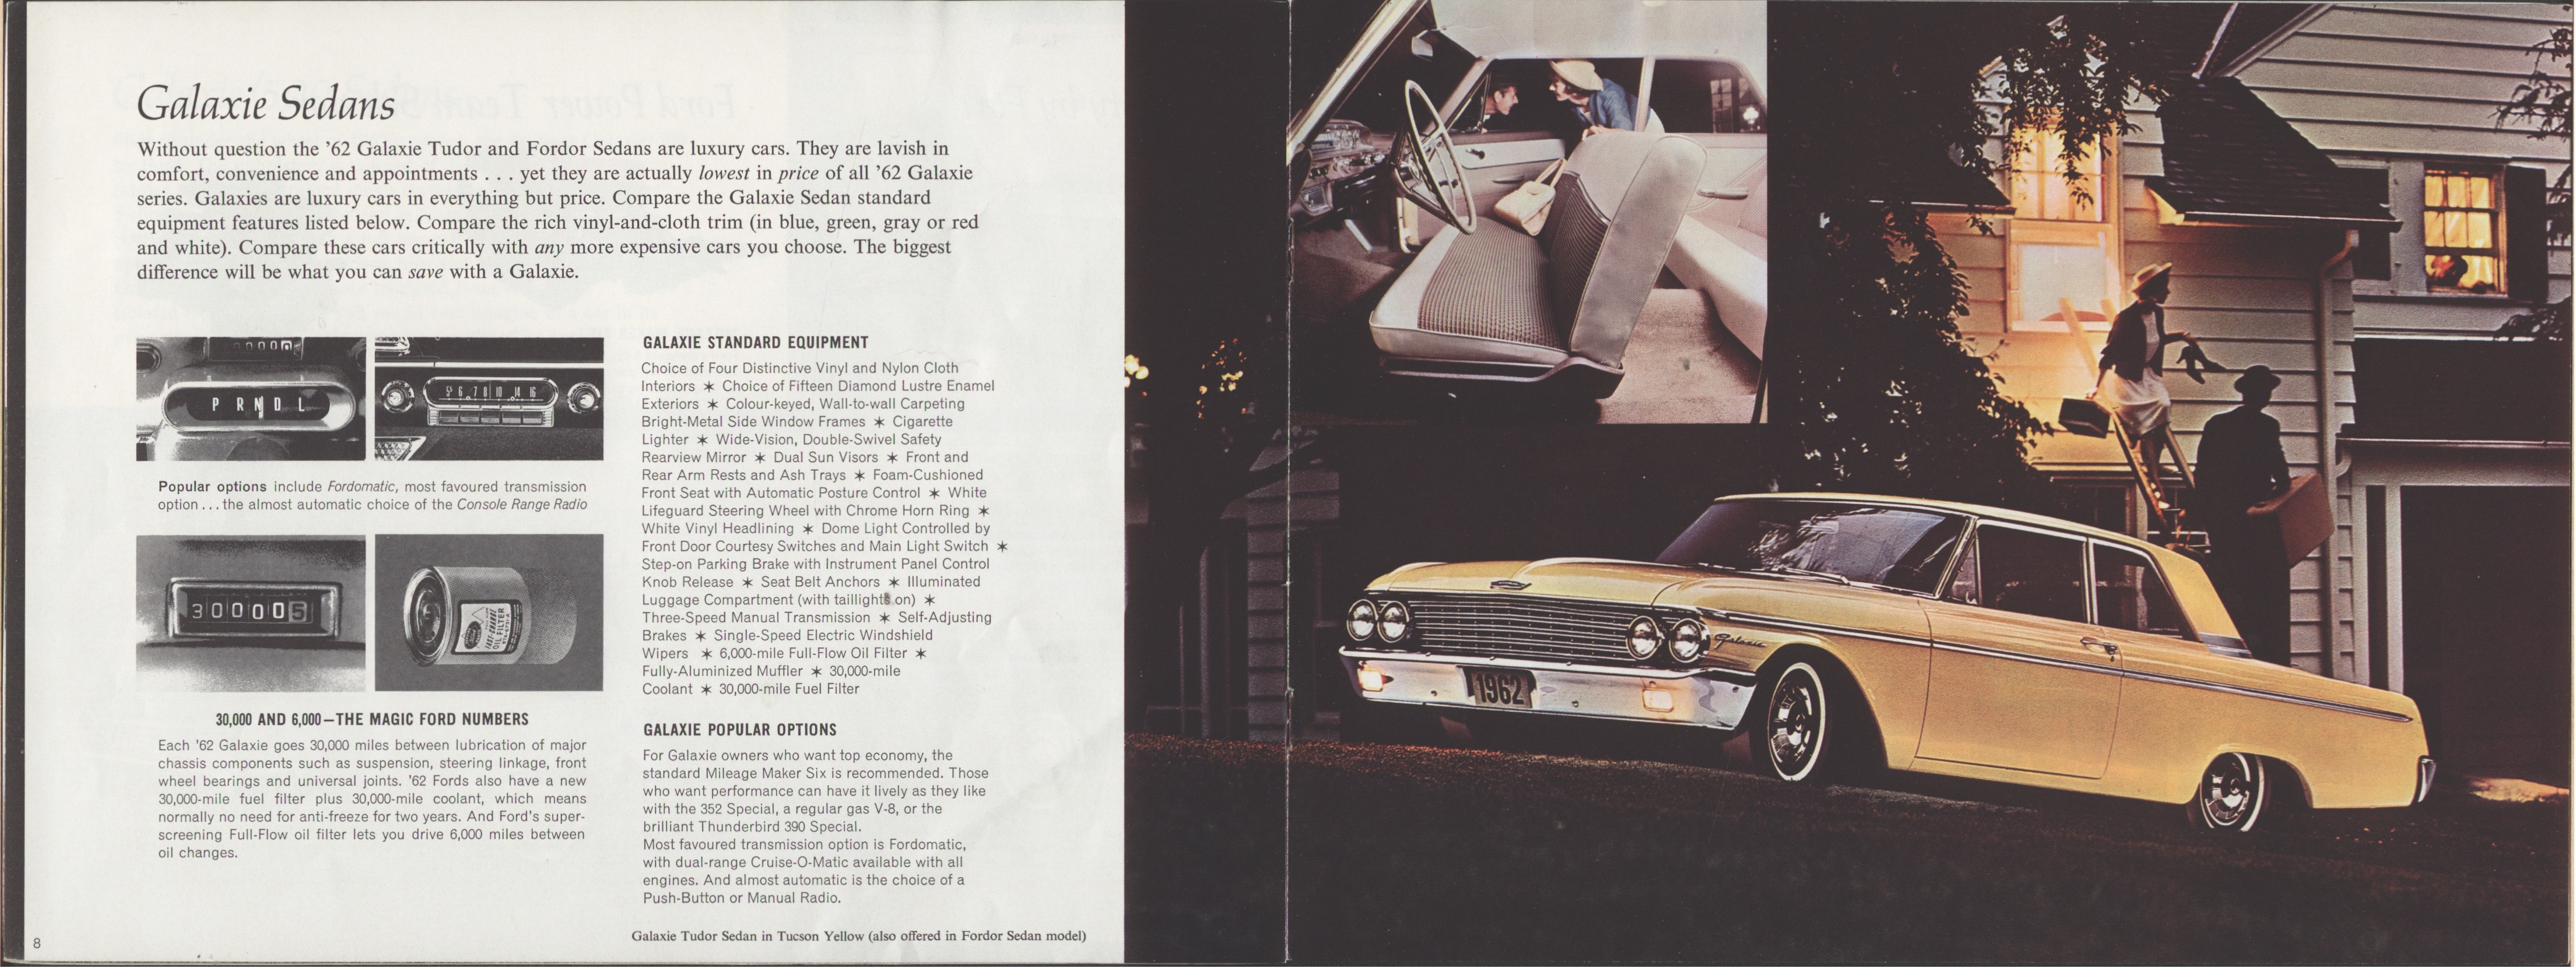 1962 Ford Galaxie Brochure (Cdn) 08-09